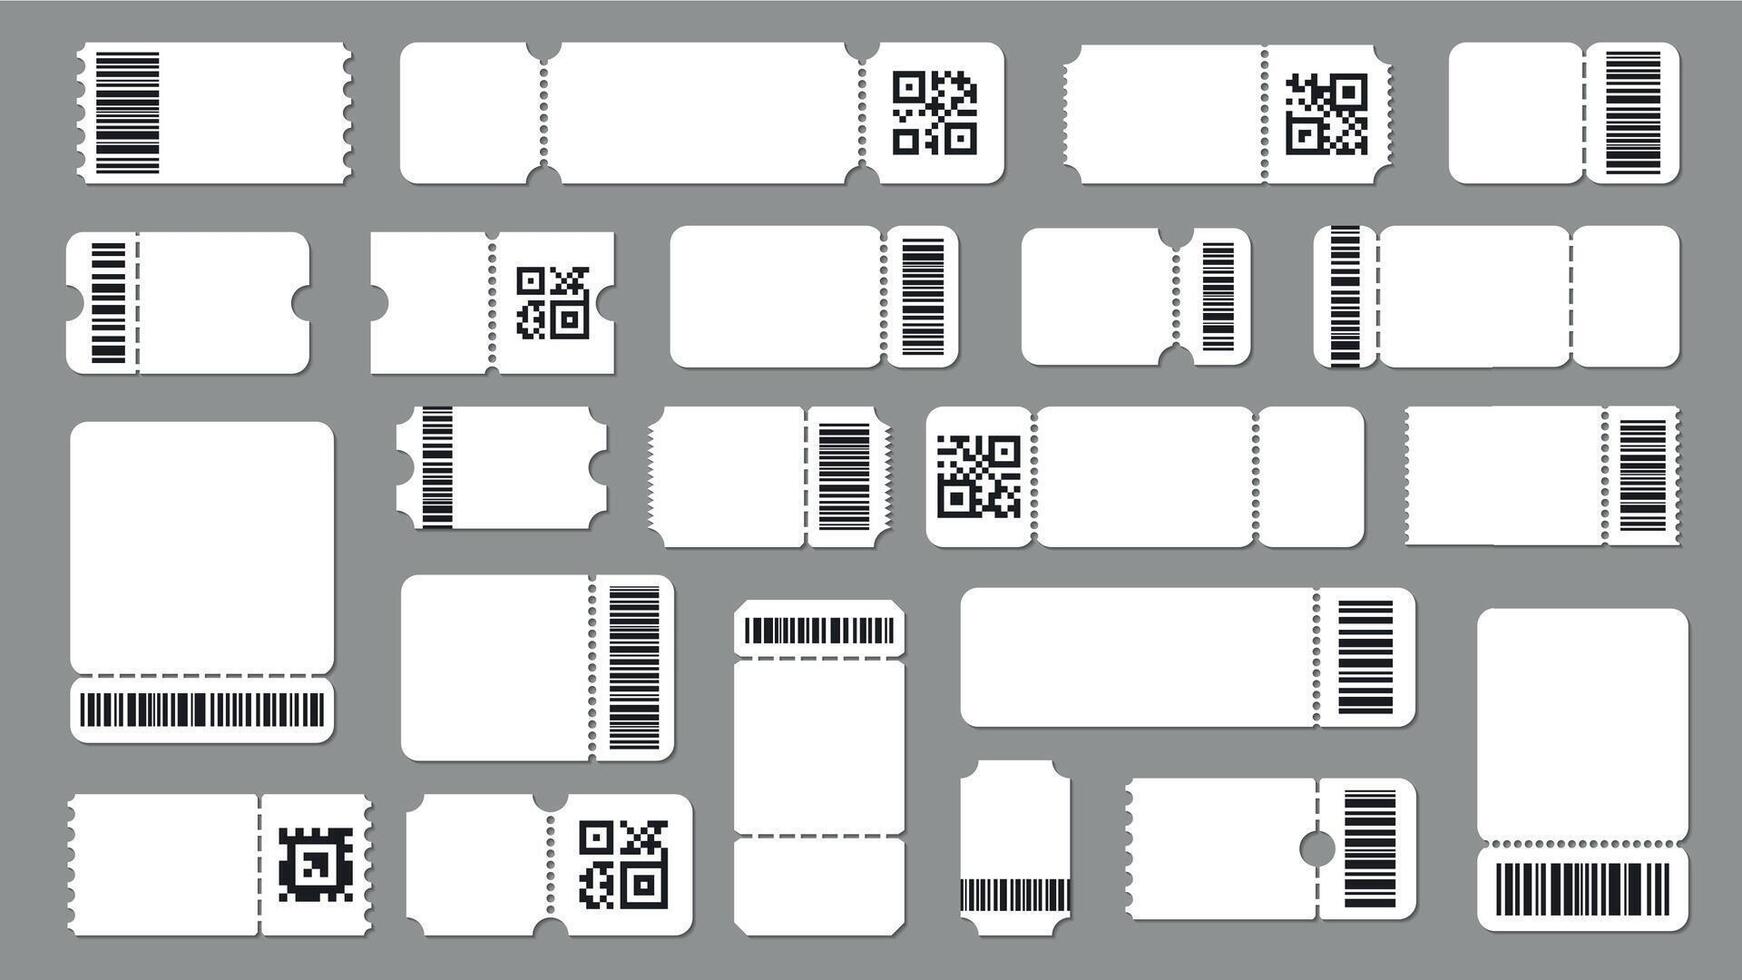 Fahrkarte Vorlage mit Code. Barcode Etikette mit Text, Stummel Fahrkarte mit qr Code und Barcode. Attrappe, Lehrmodell, Simulation zum Veranstaltung Fahrkarte Vektor